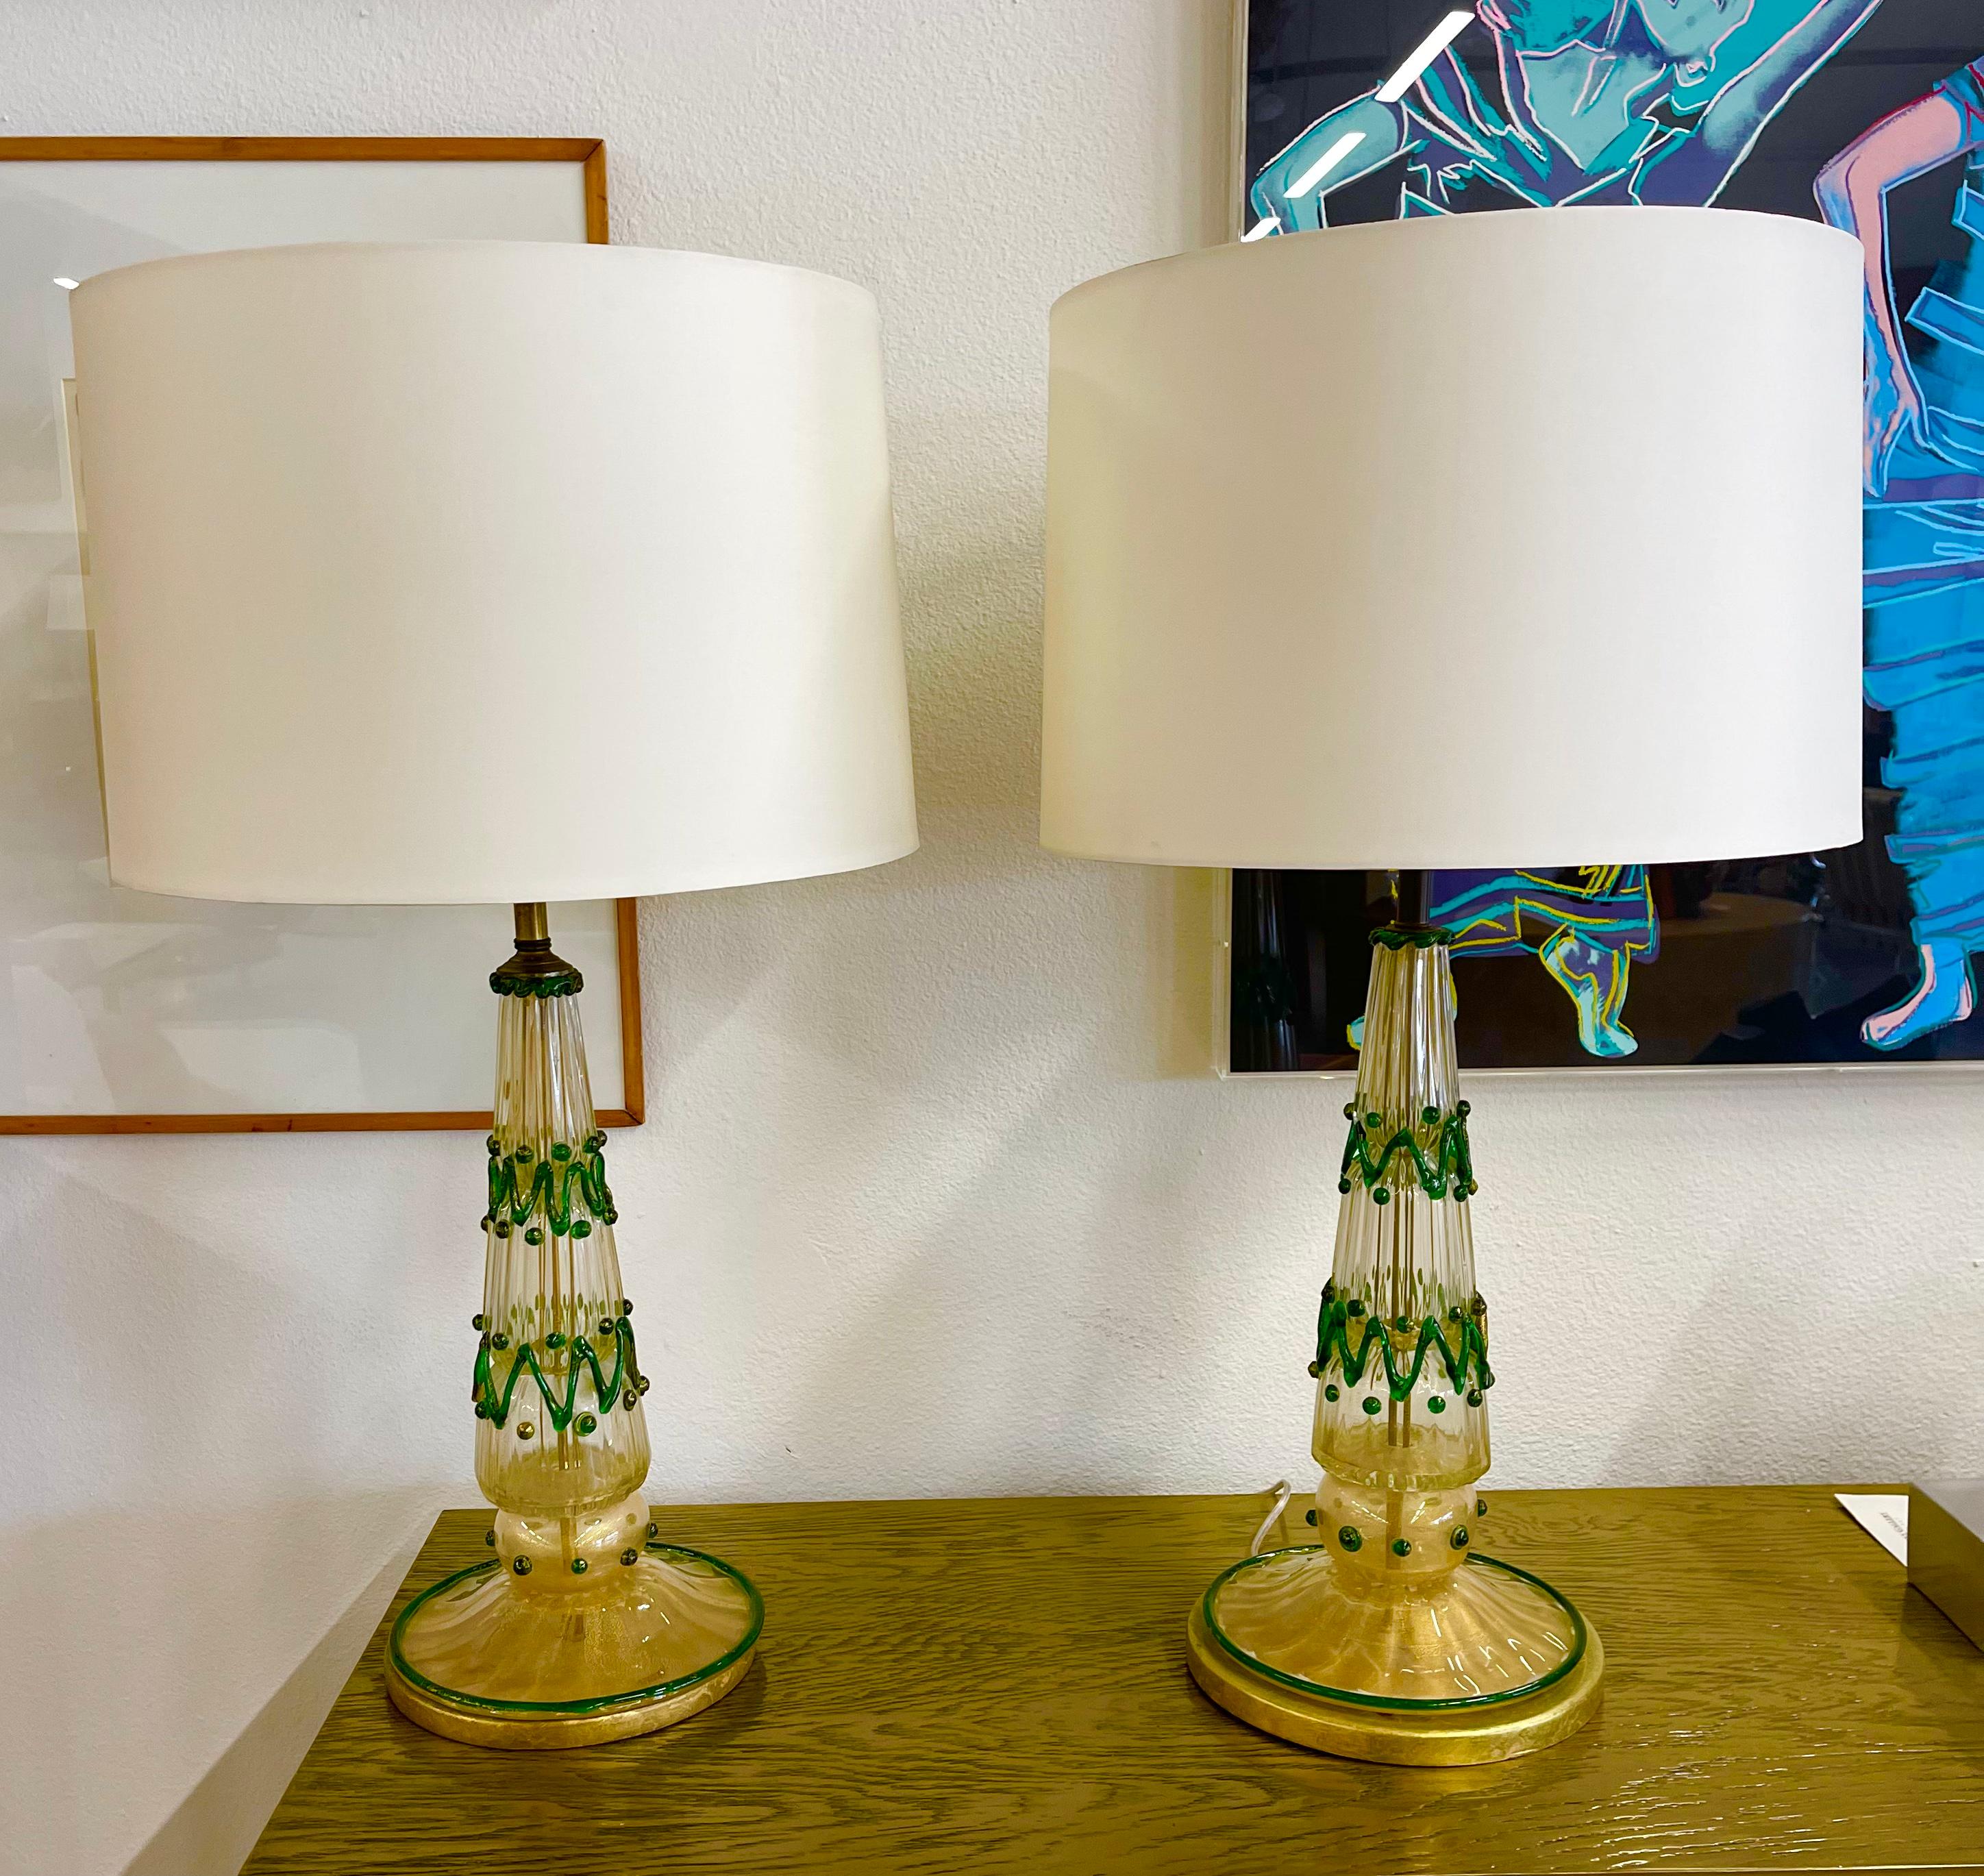 Une paire festive de lampes murano vintage. Je ne suis pas sûr du fabricant, mais vers les années 1950-1960. Décoration appliquée et joliment montée sur des bases dorées. Nouveau câblage. Les abat-jour ont un diamètre de 18 pouces. La partie en